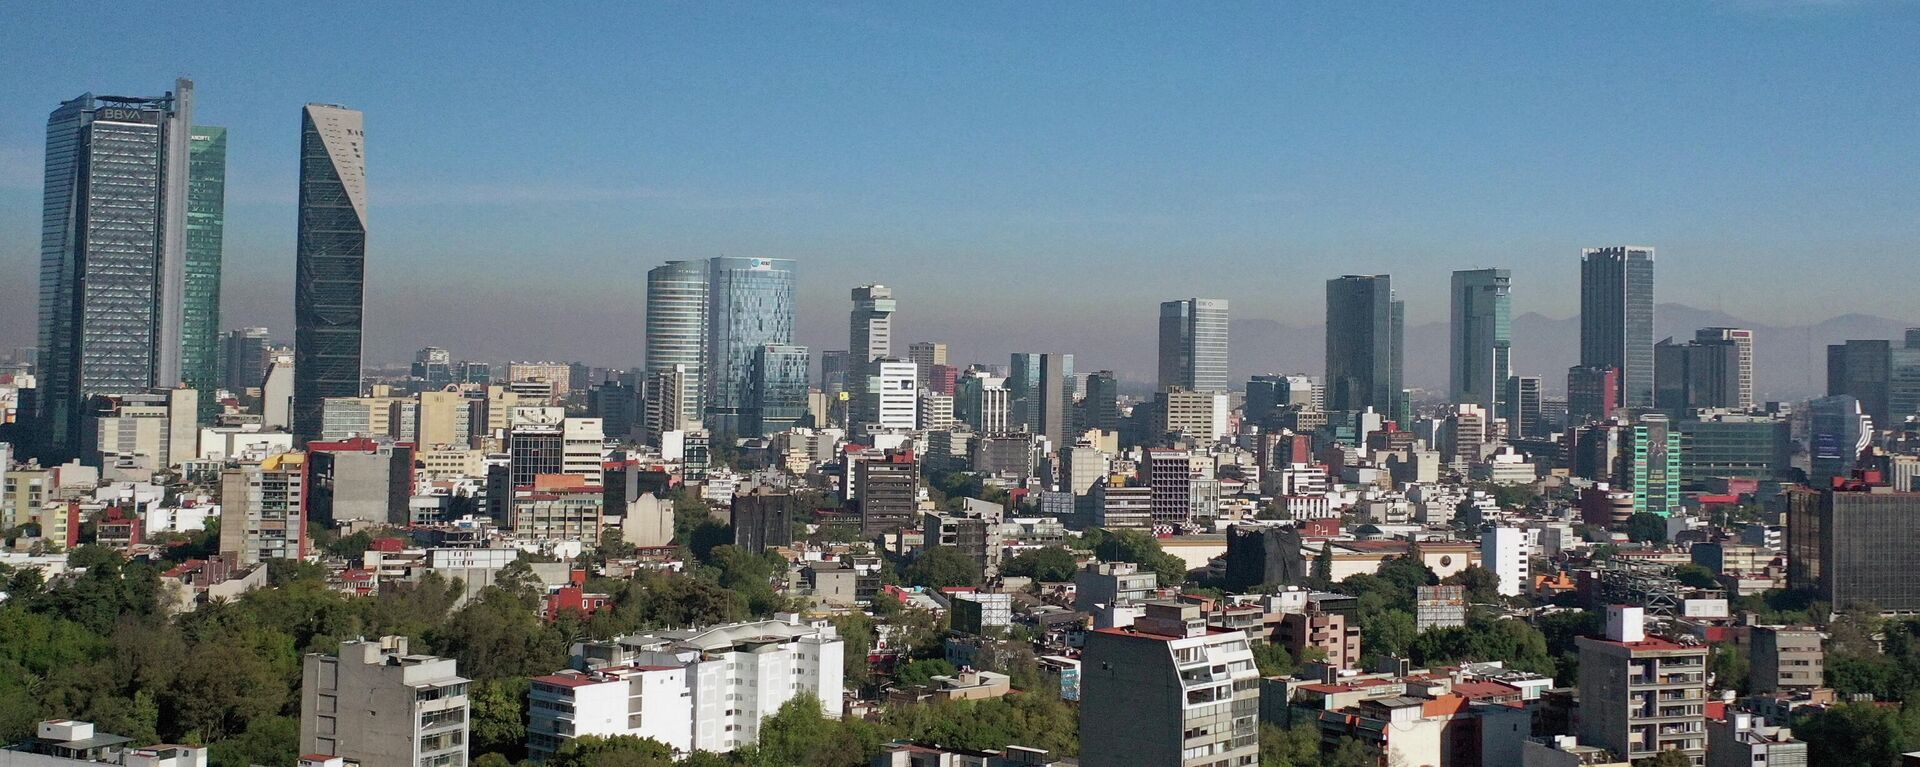 Ciudad de México vista desde el aire - Sputnik Mundo, 1920, 30.11.2021